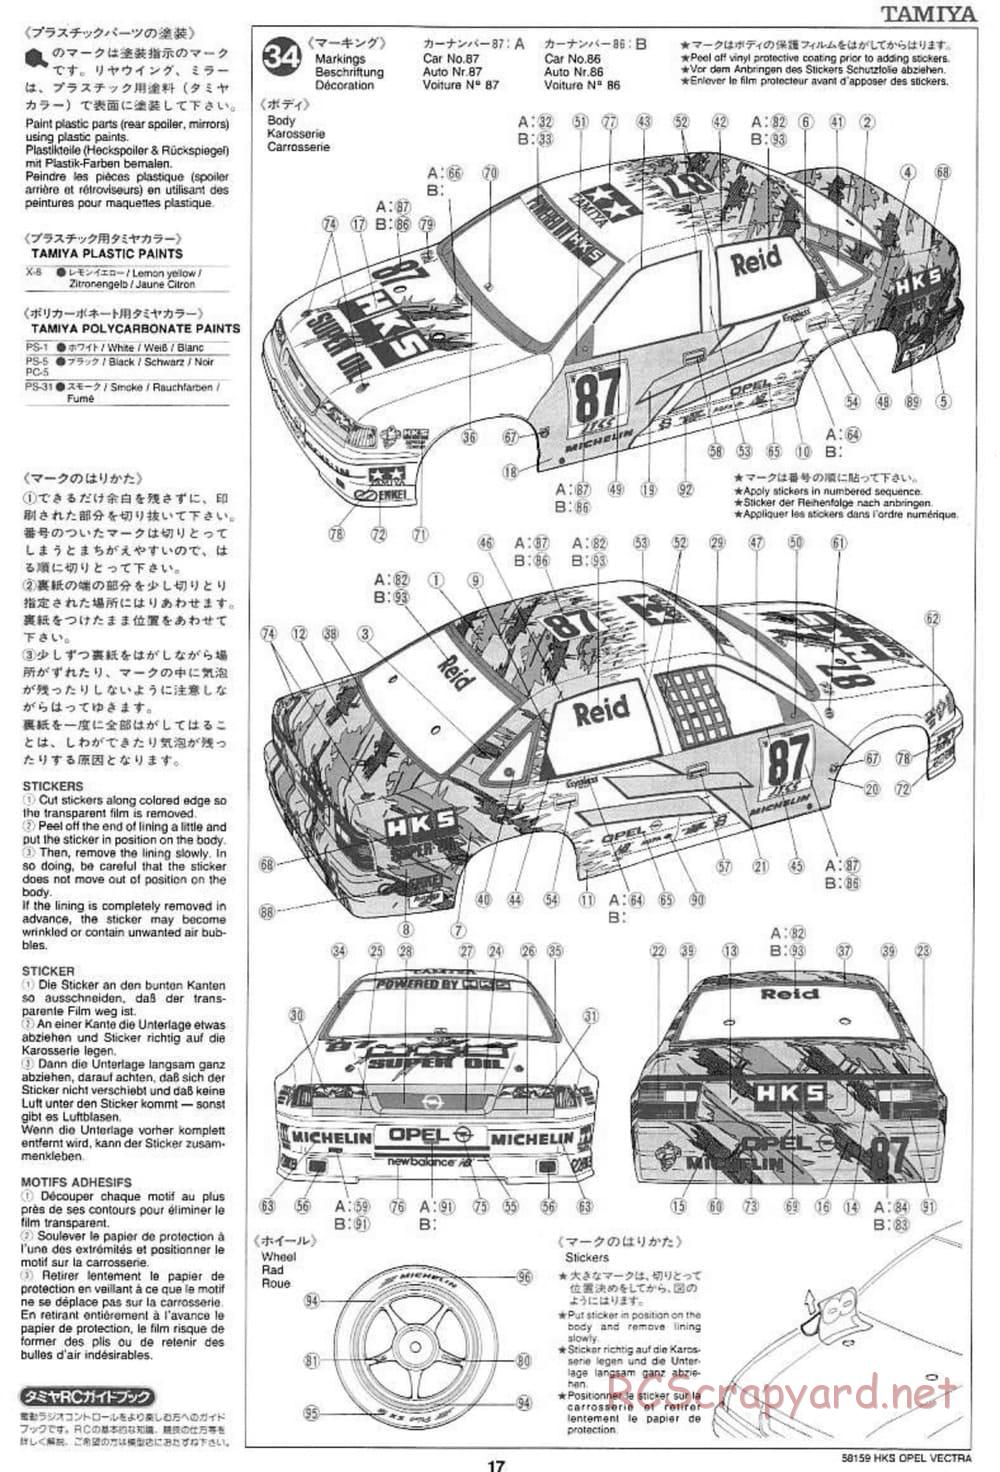 Tamiya - HKS Opel Vectra JTCC - FF-01 Chassis - Manual - Page 17